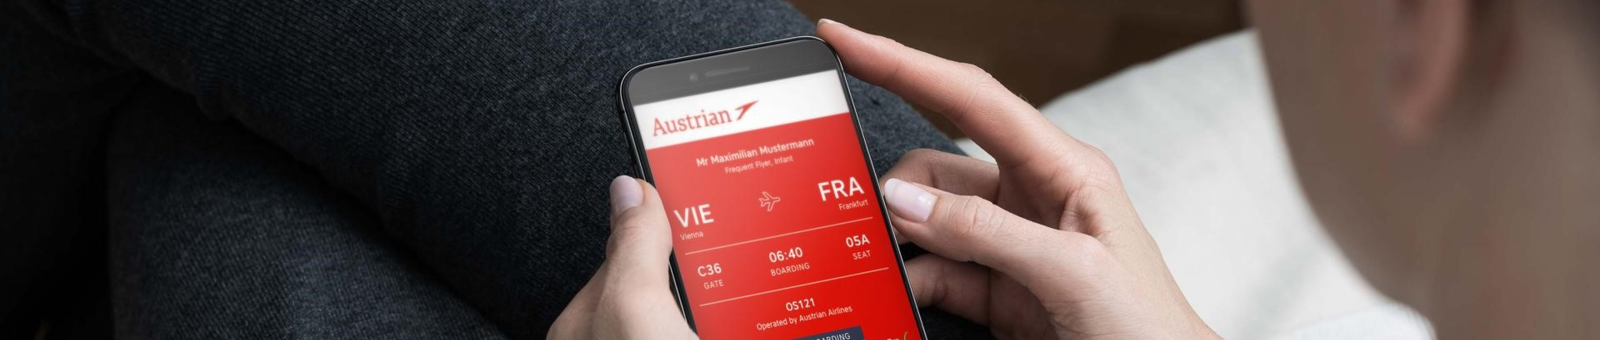 Online Check in bei der Austrian Airlines 